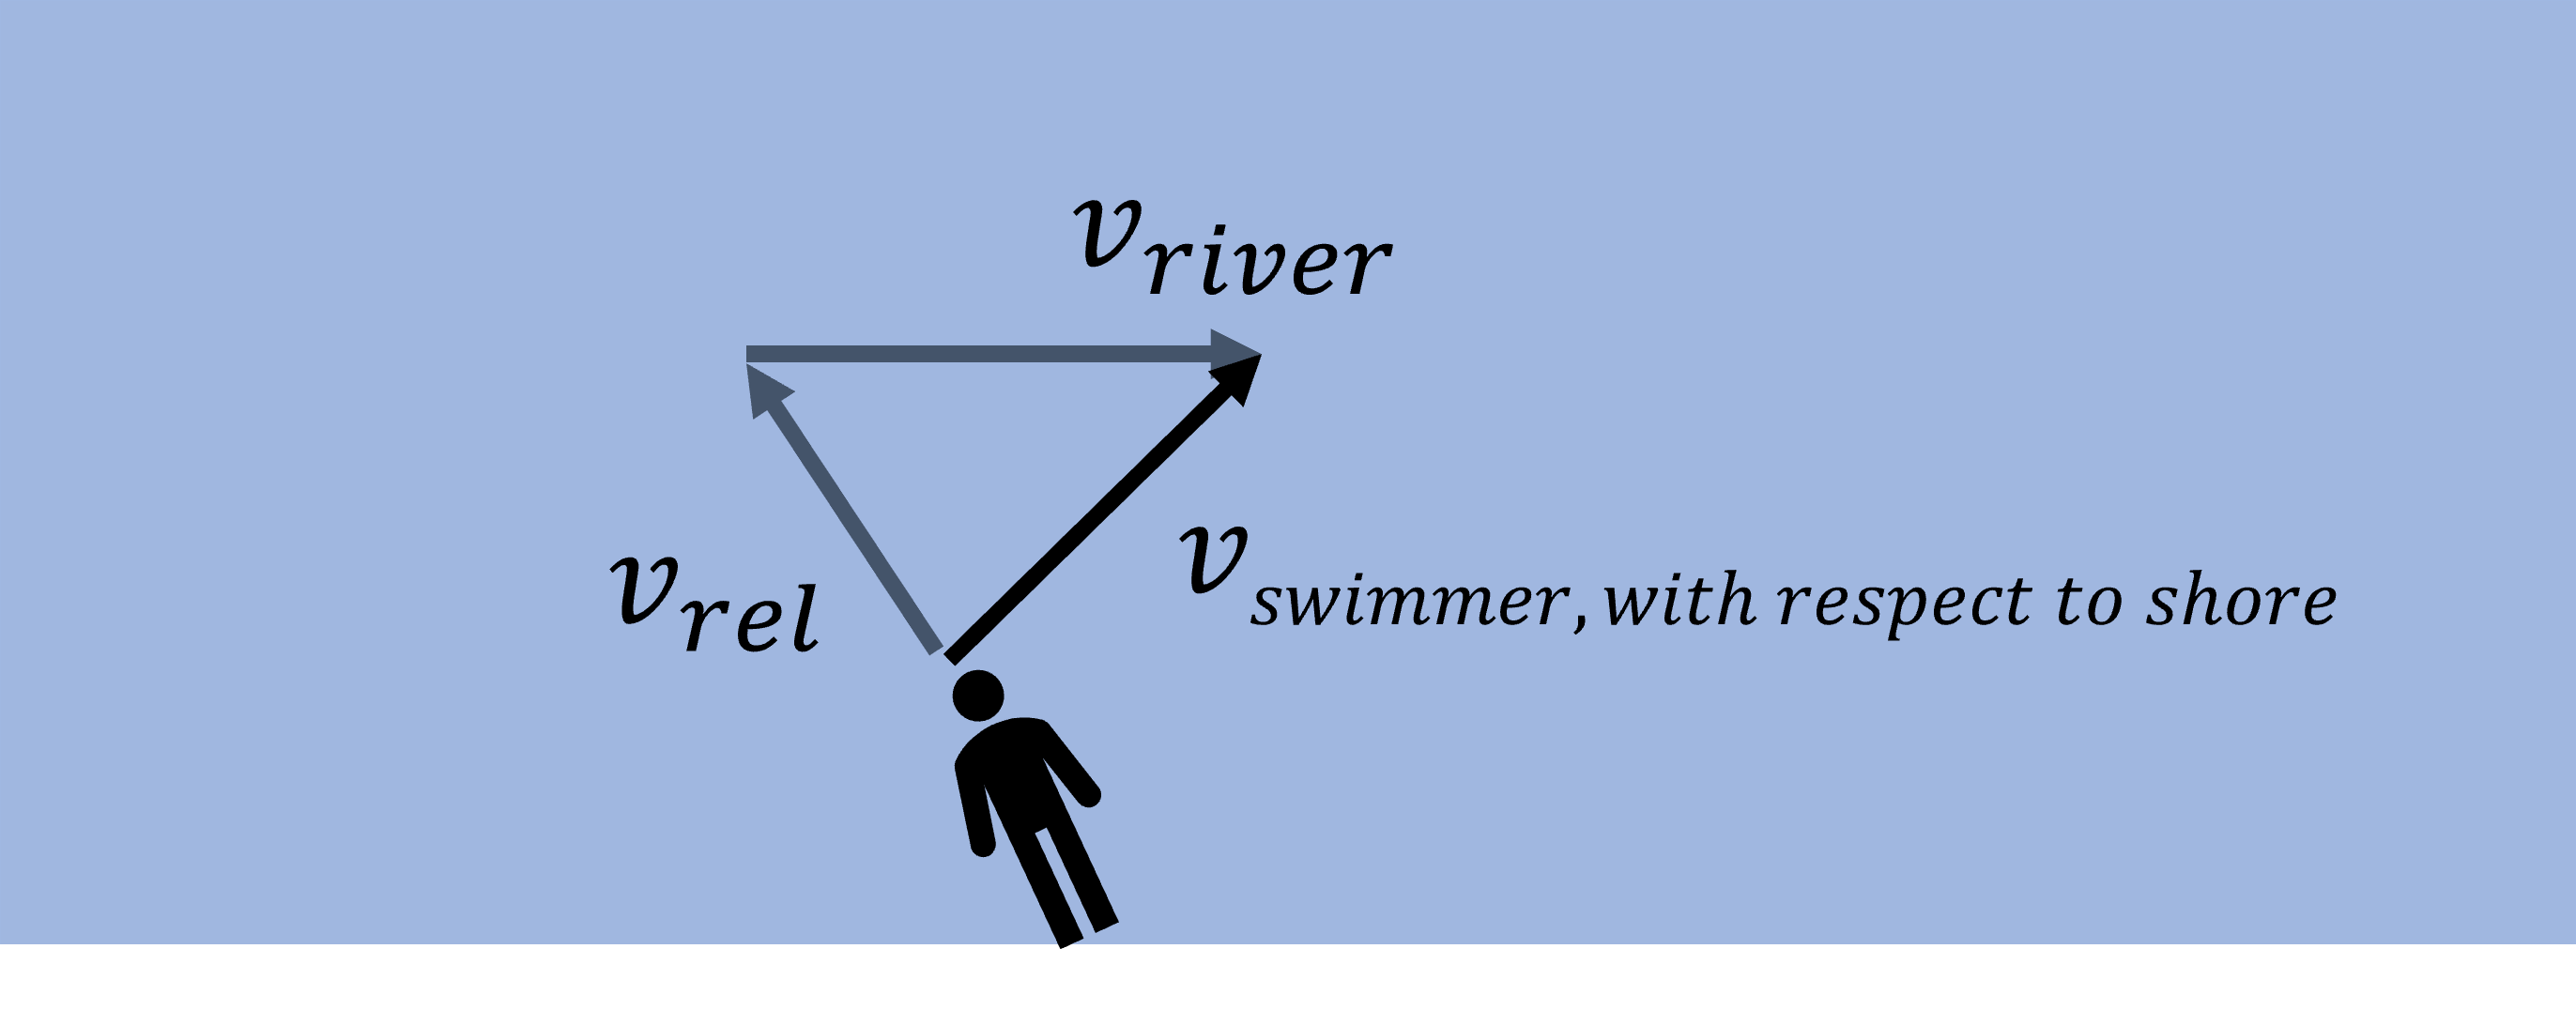 Swimmer in river